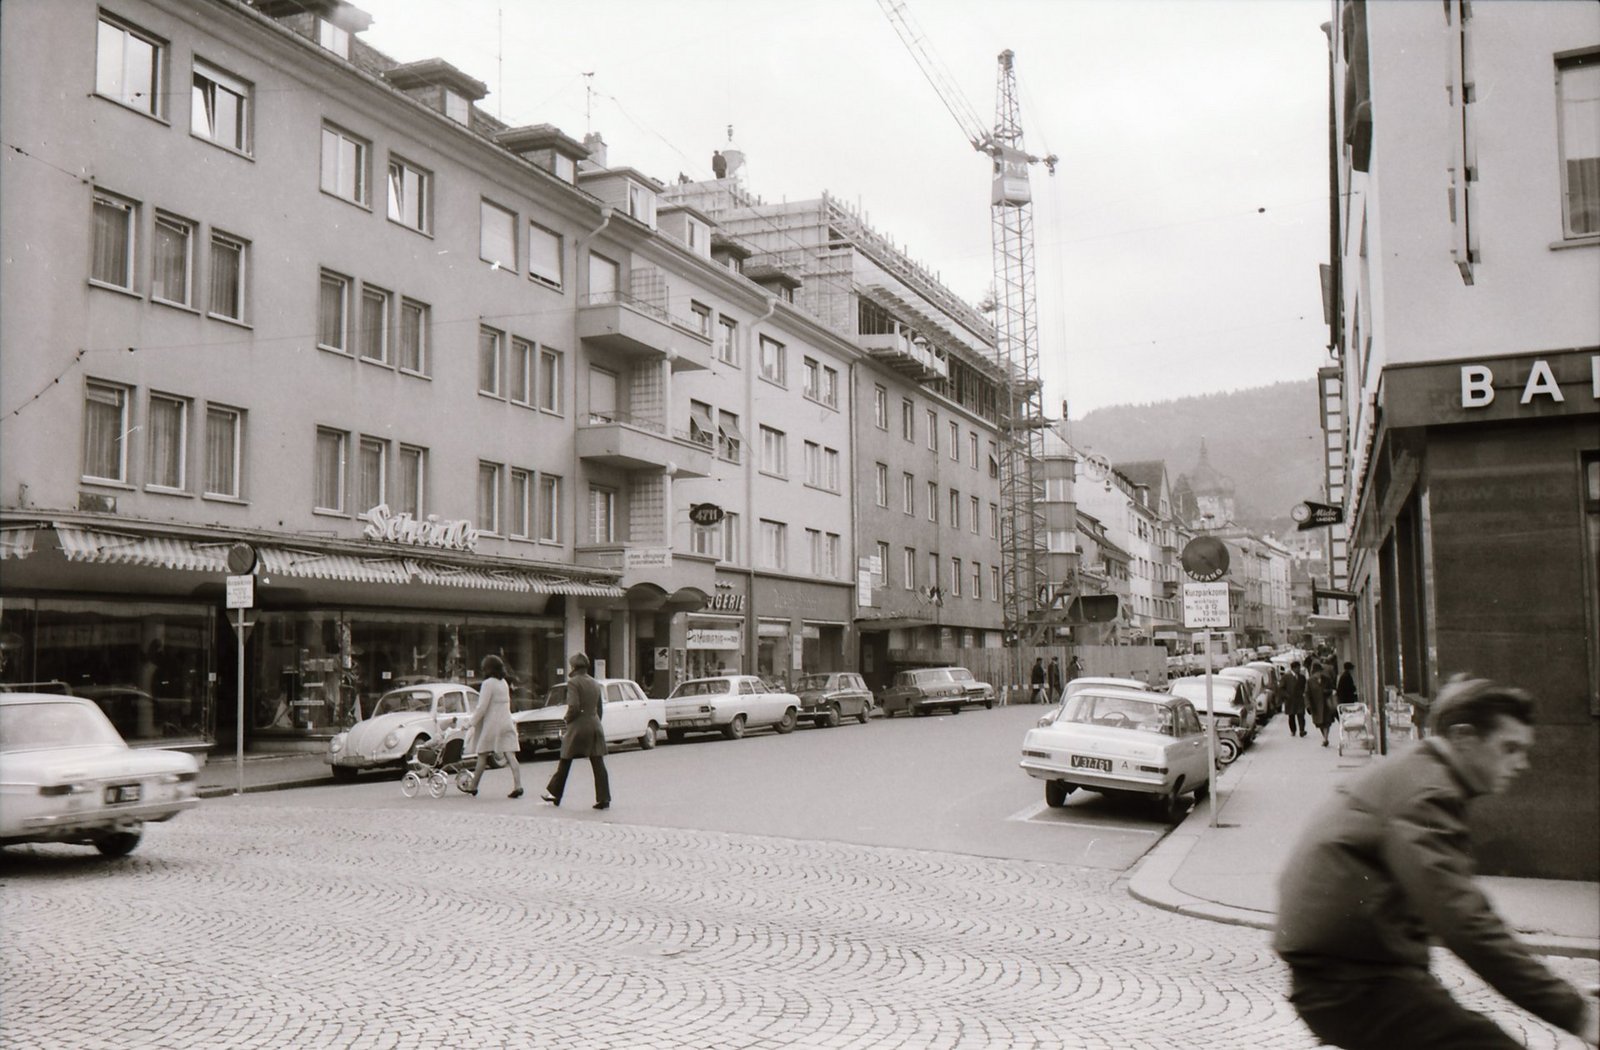 Blick auf die Kaiserstraße aus dem Jahr 1965